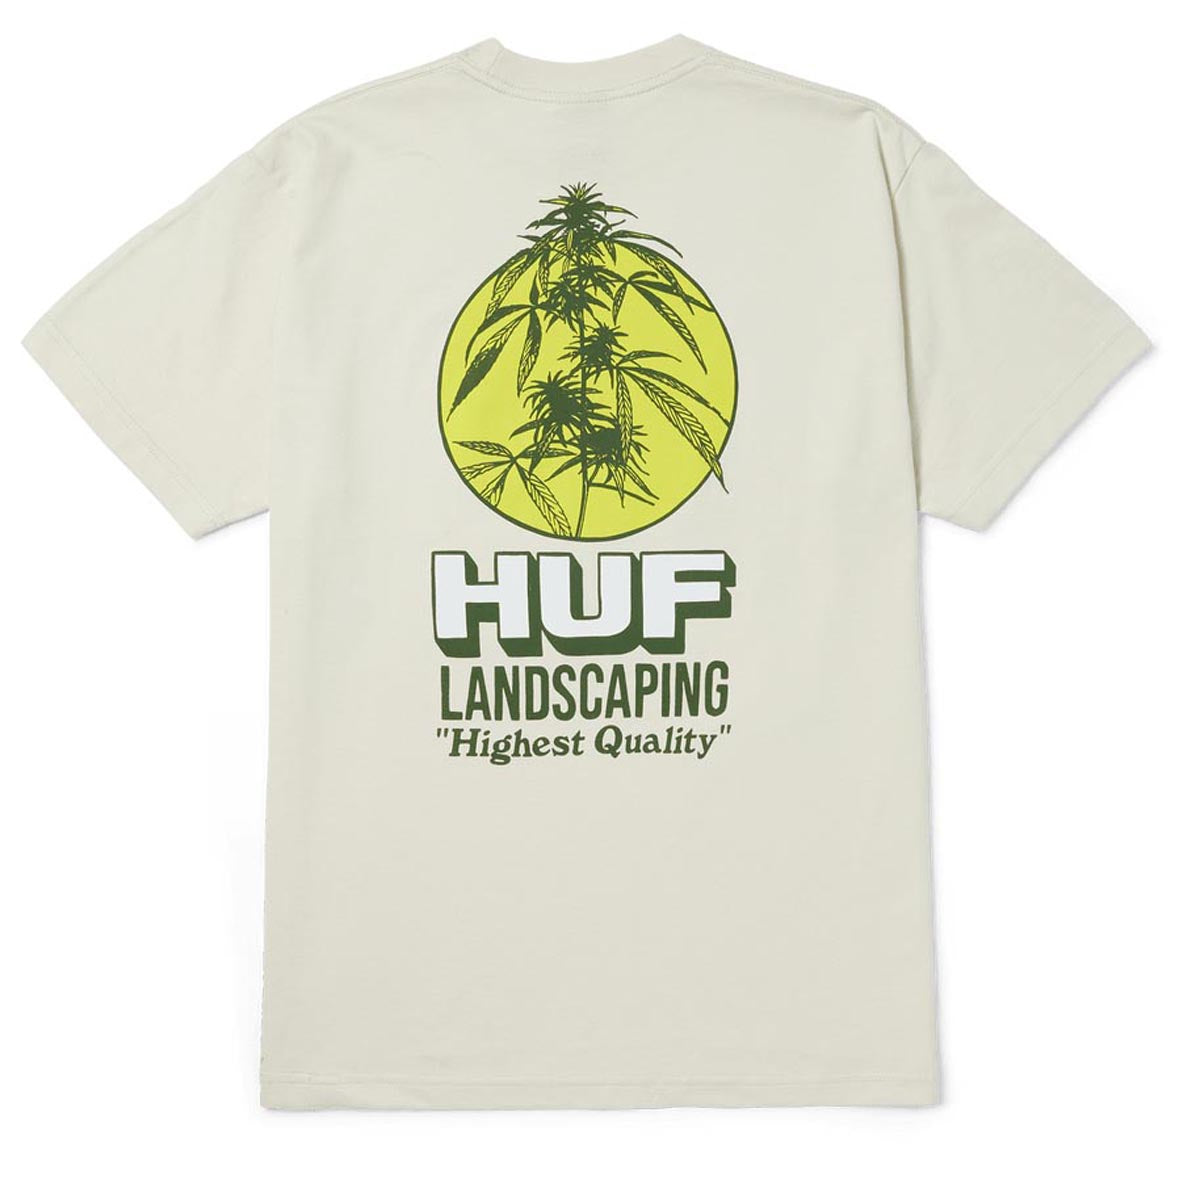 HUF Landscaping T-Shirt - Bone image 1